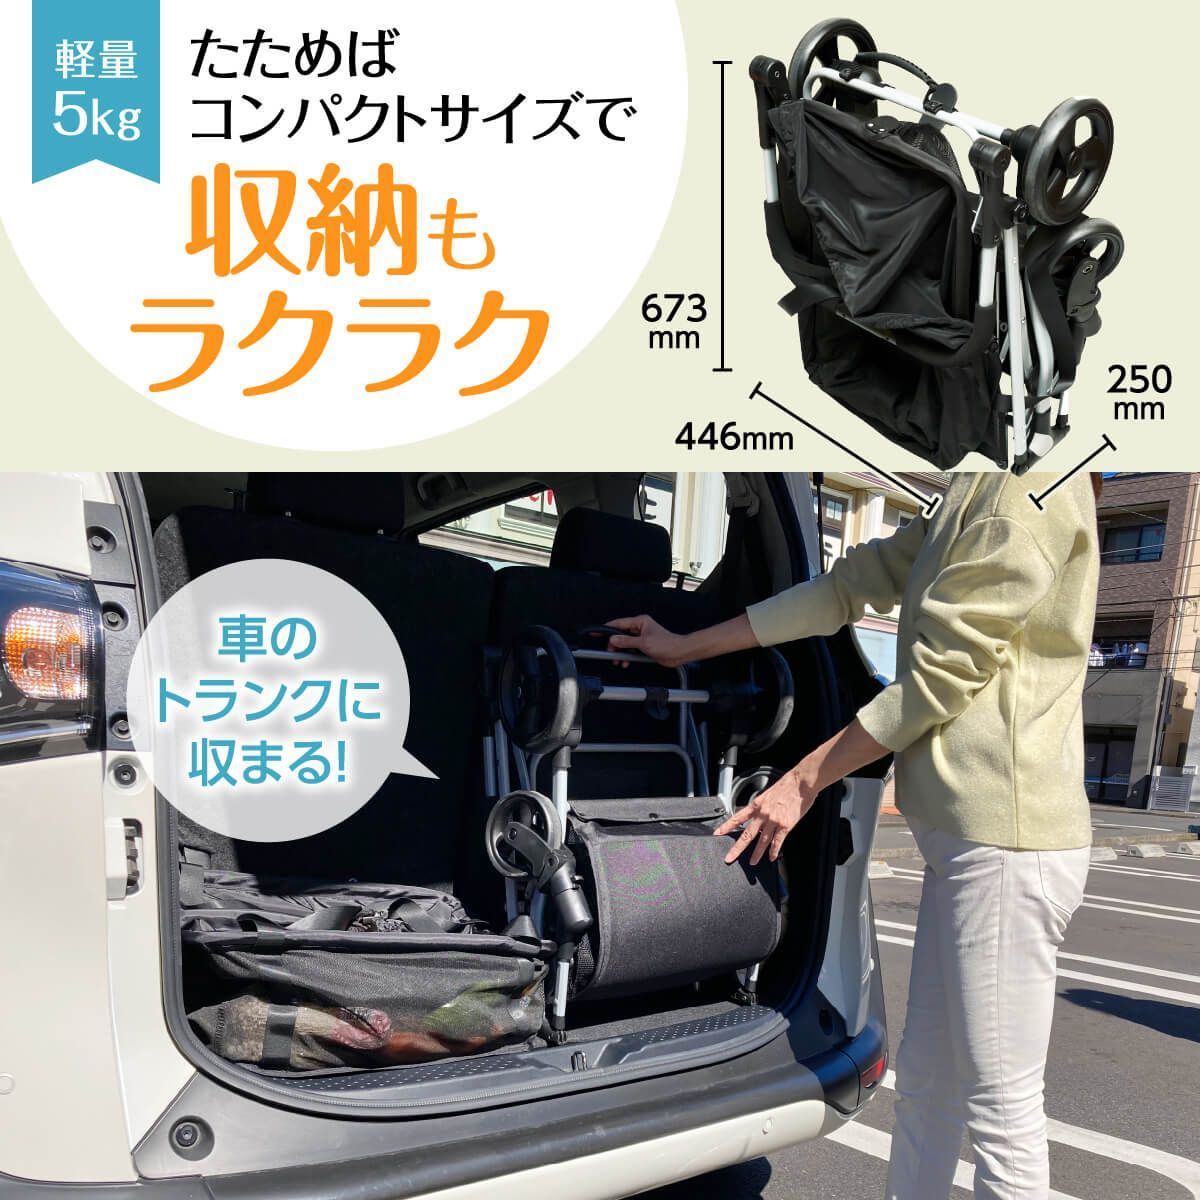 エコカ (Ecoca) ショッピングカート本体＋マイバッグセット【中古品